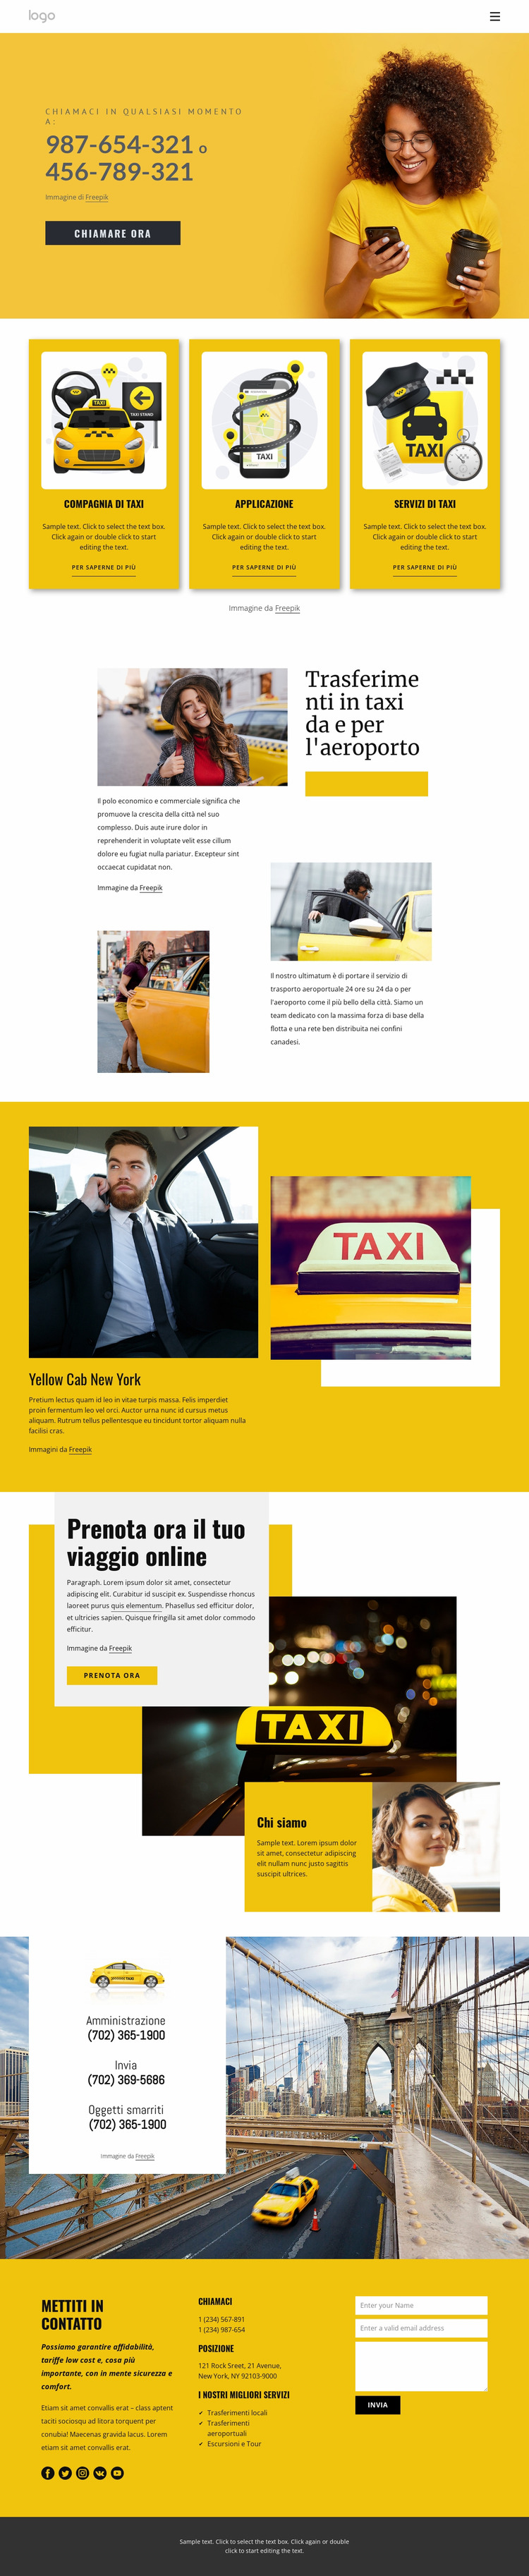 Servizio taxi di qualità Modello Joomla